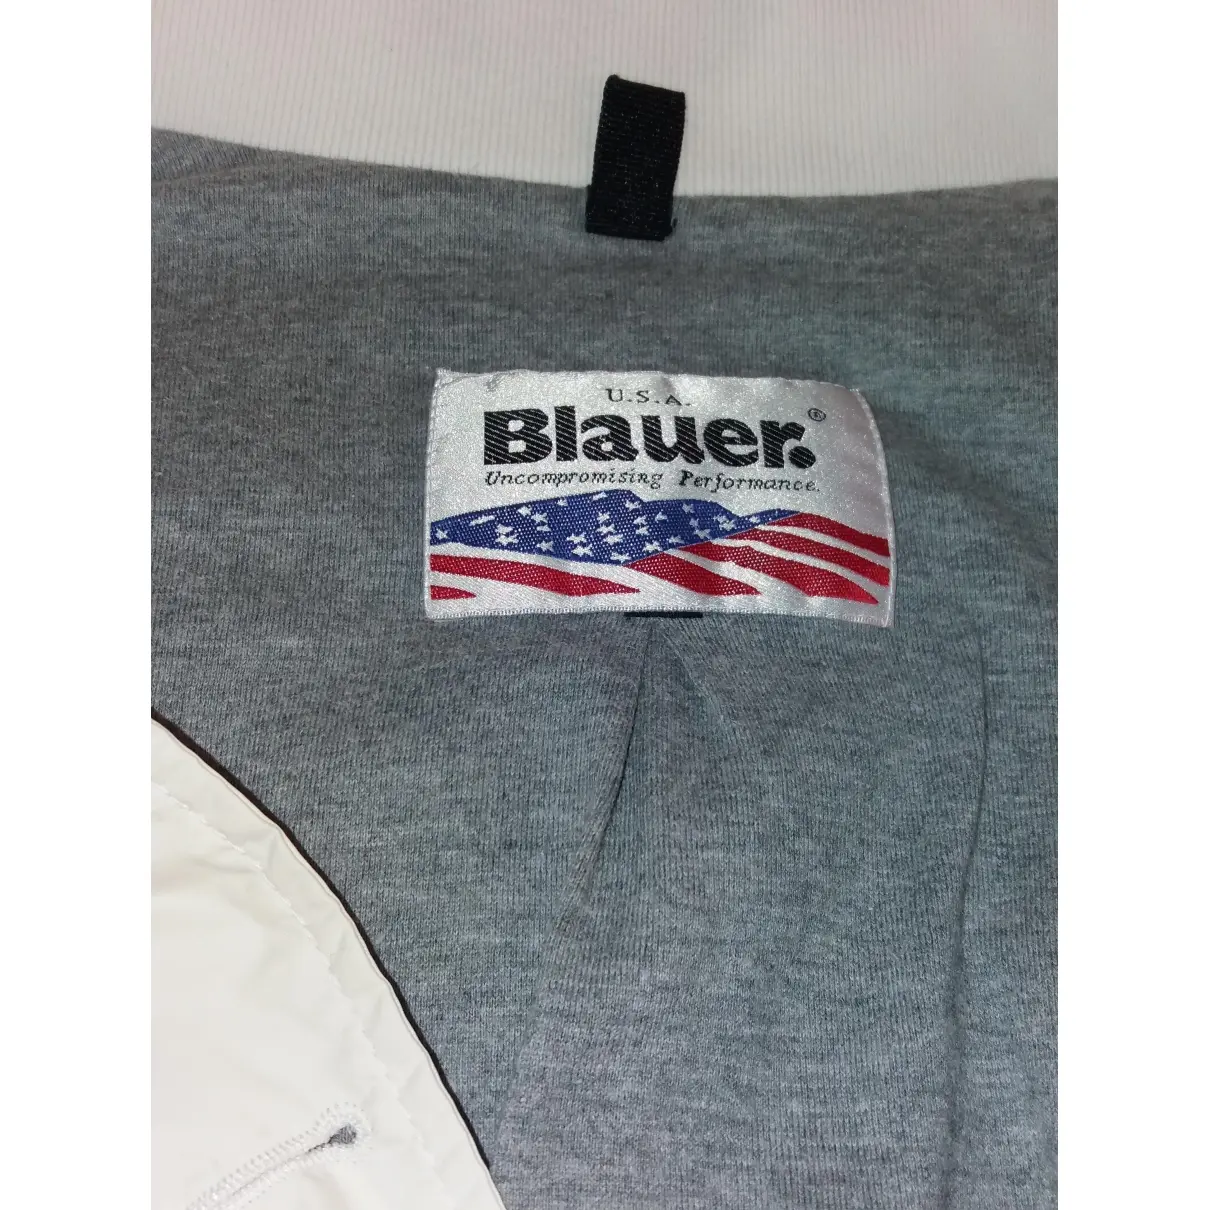 Buy Blauer Biker jacket online